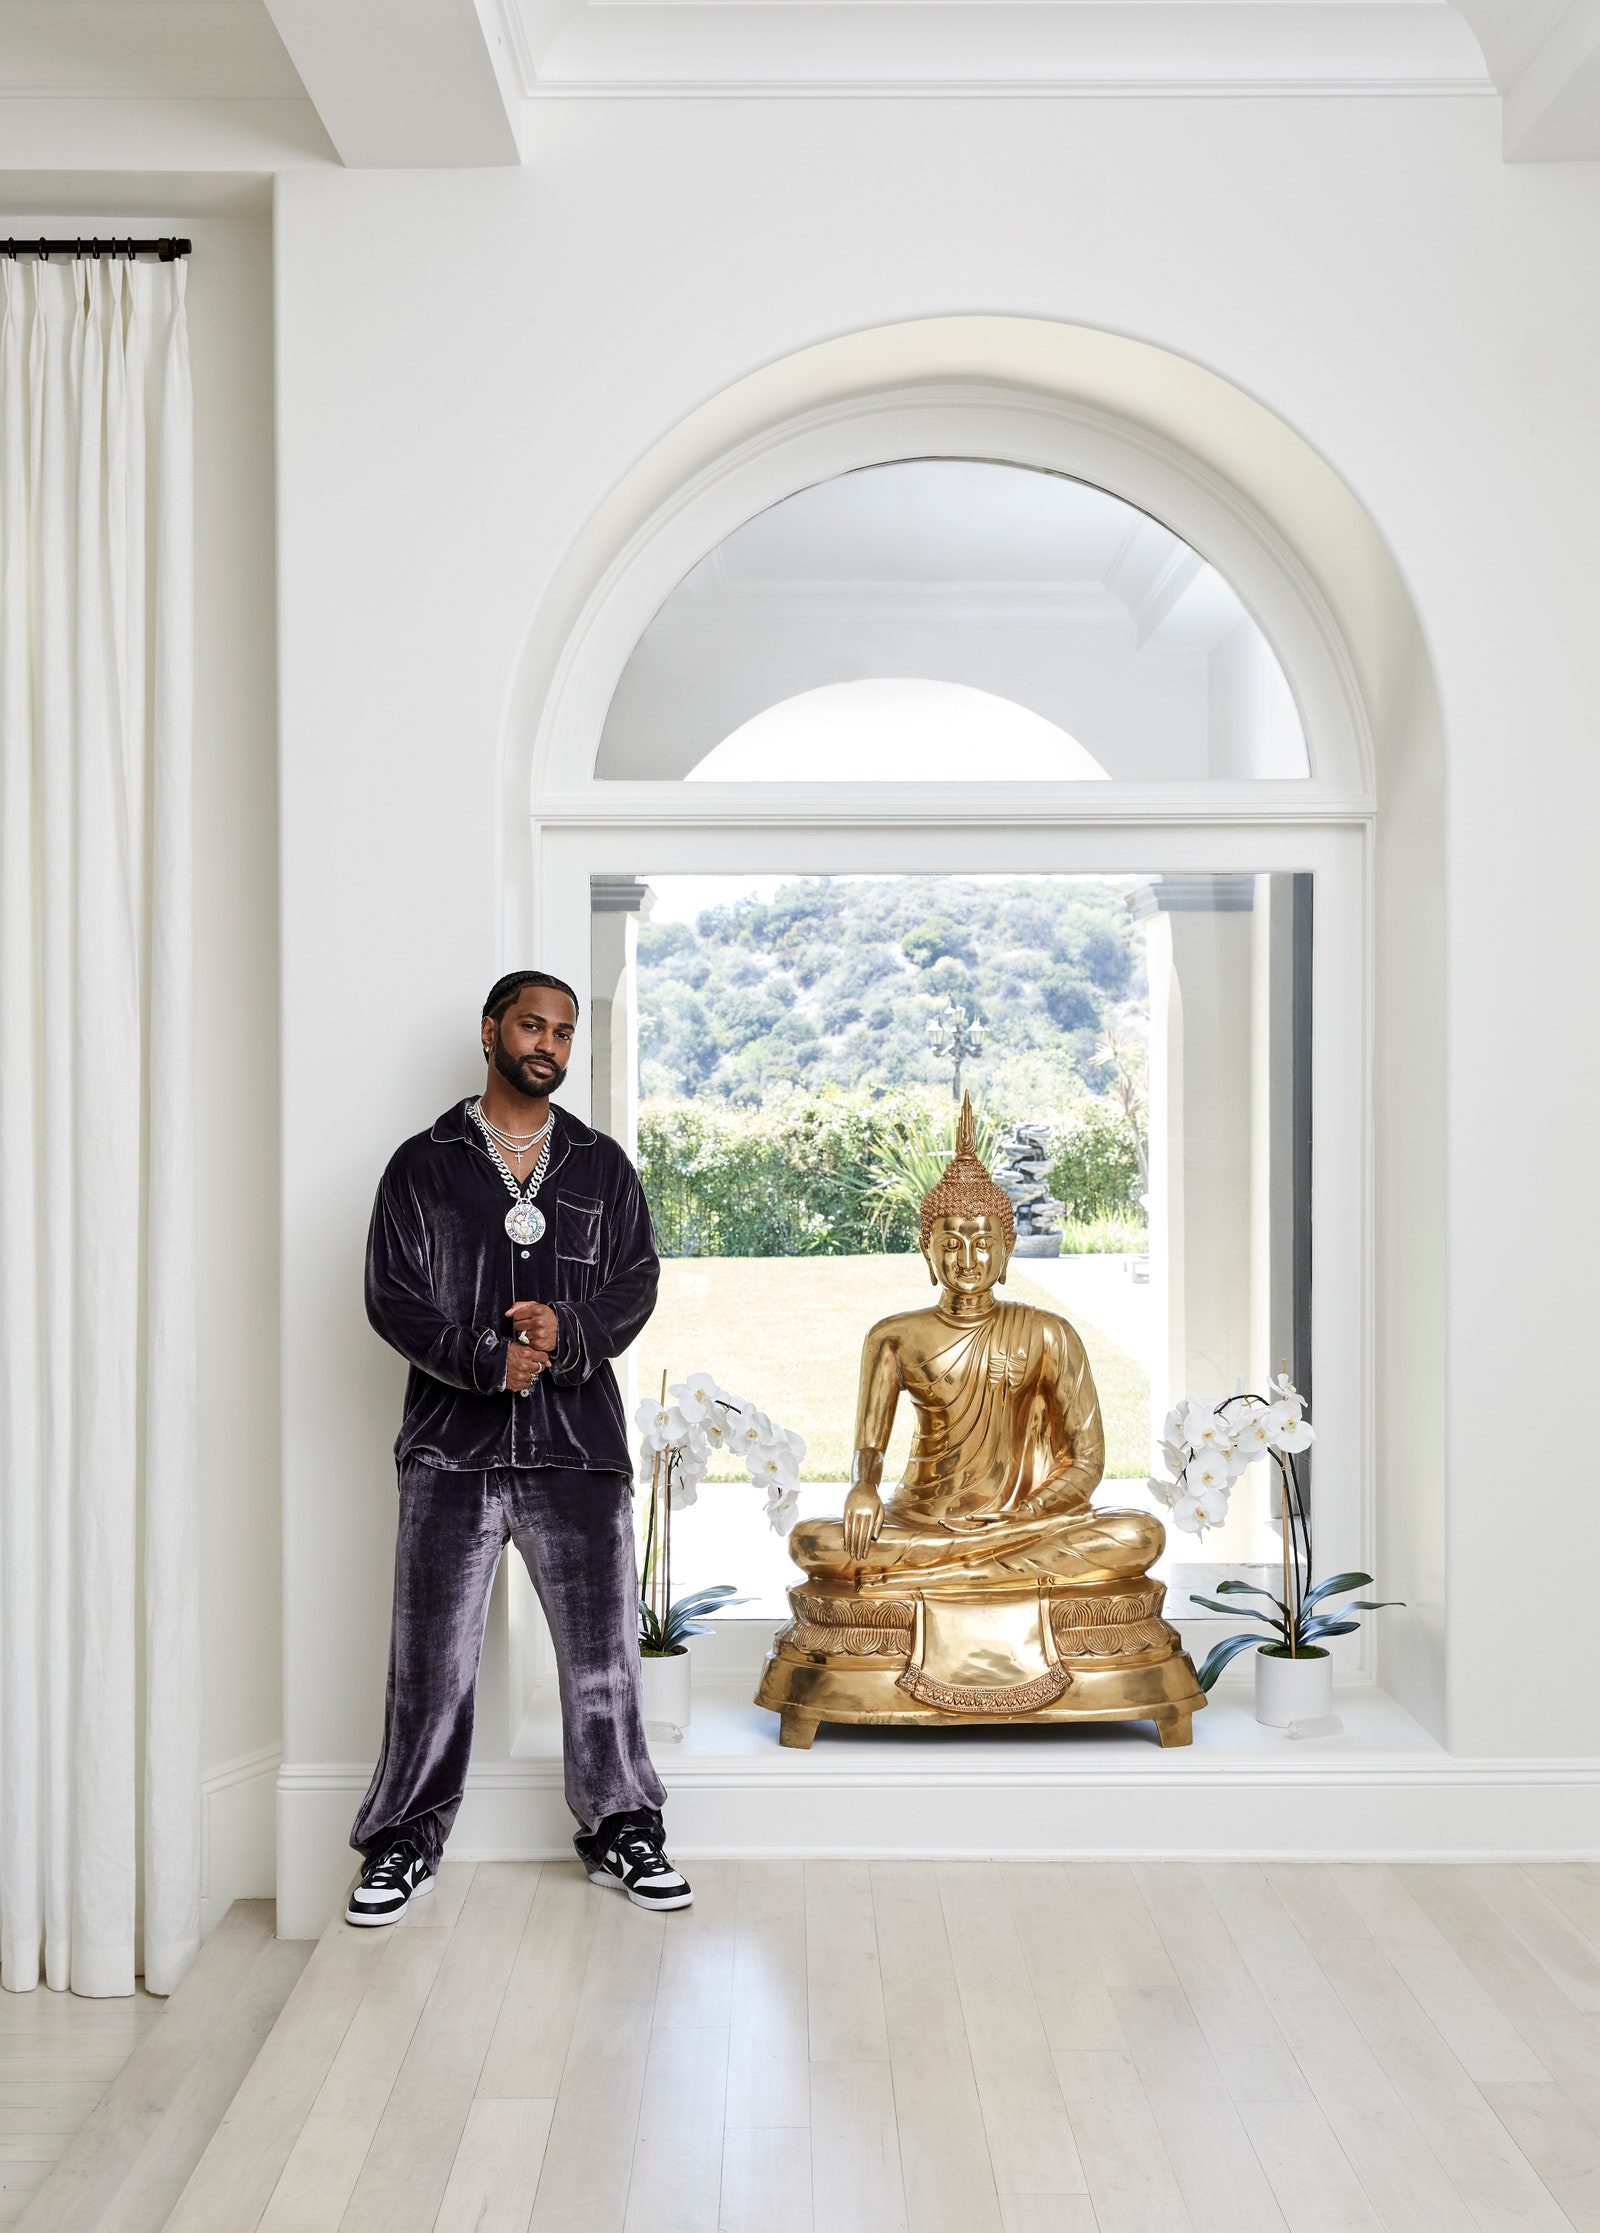 Elképesztő luxusvilla Los Angelesben: nézd meg a rapper szuperszát Big Sean csodálatos kaliforniai otthonát. Hírességek otthona.